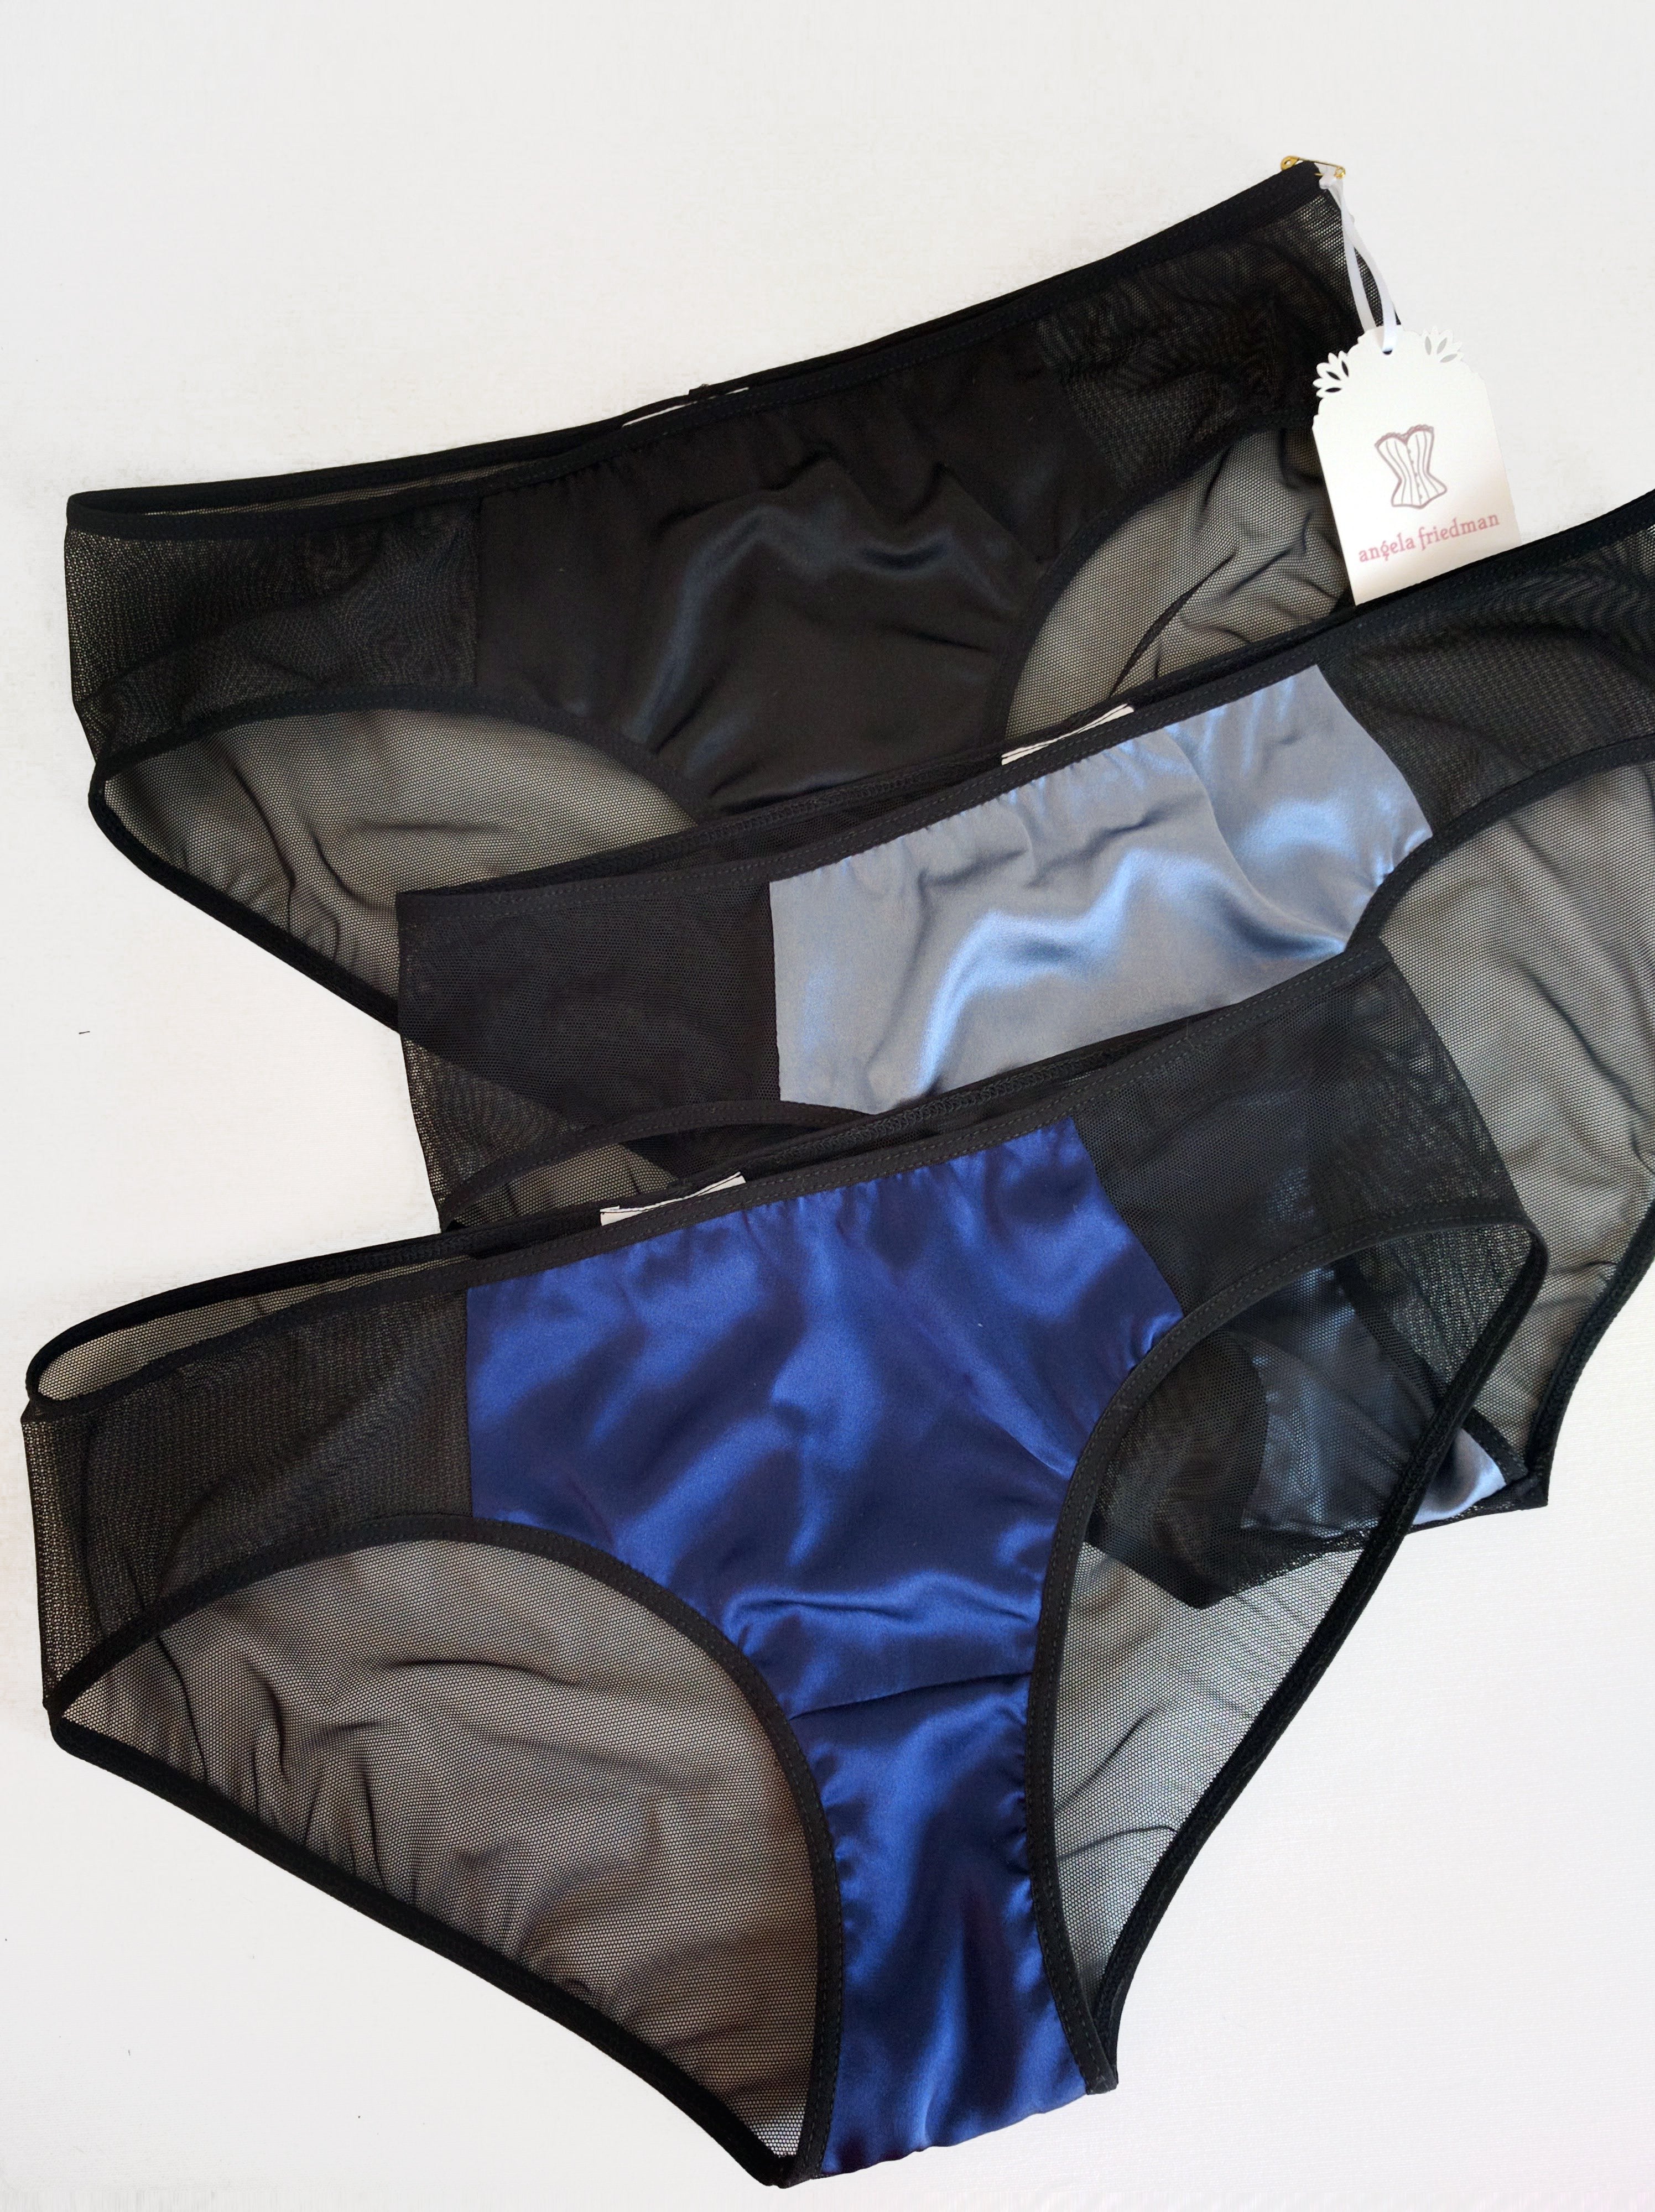 Designer vintage-style black and blue silk underwear sets